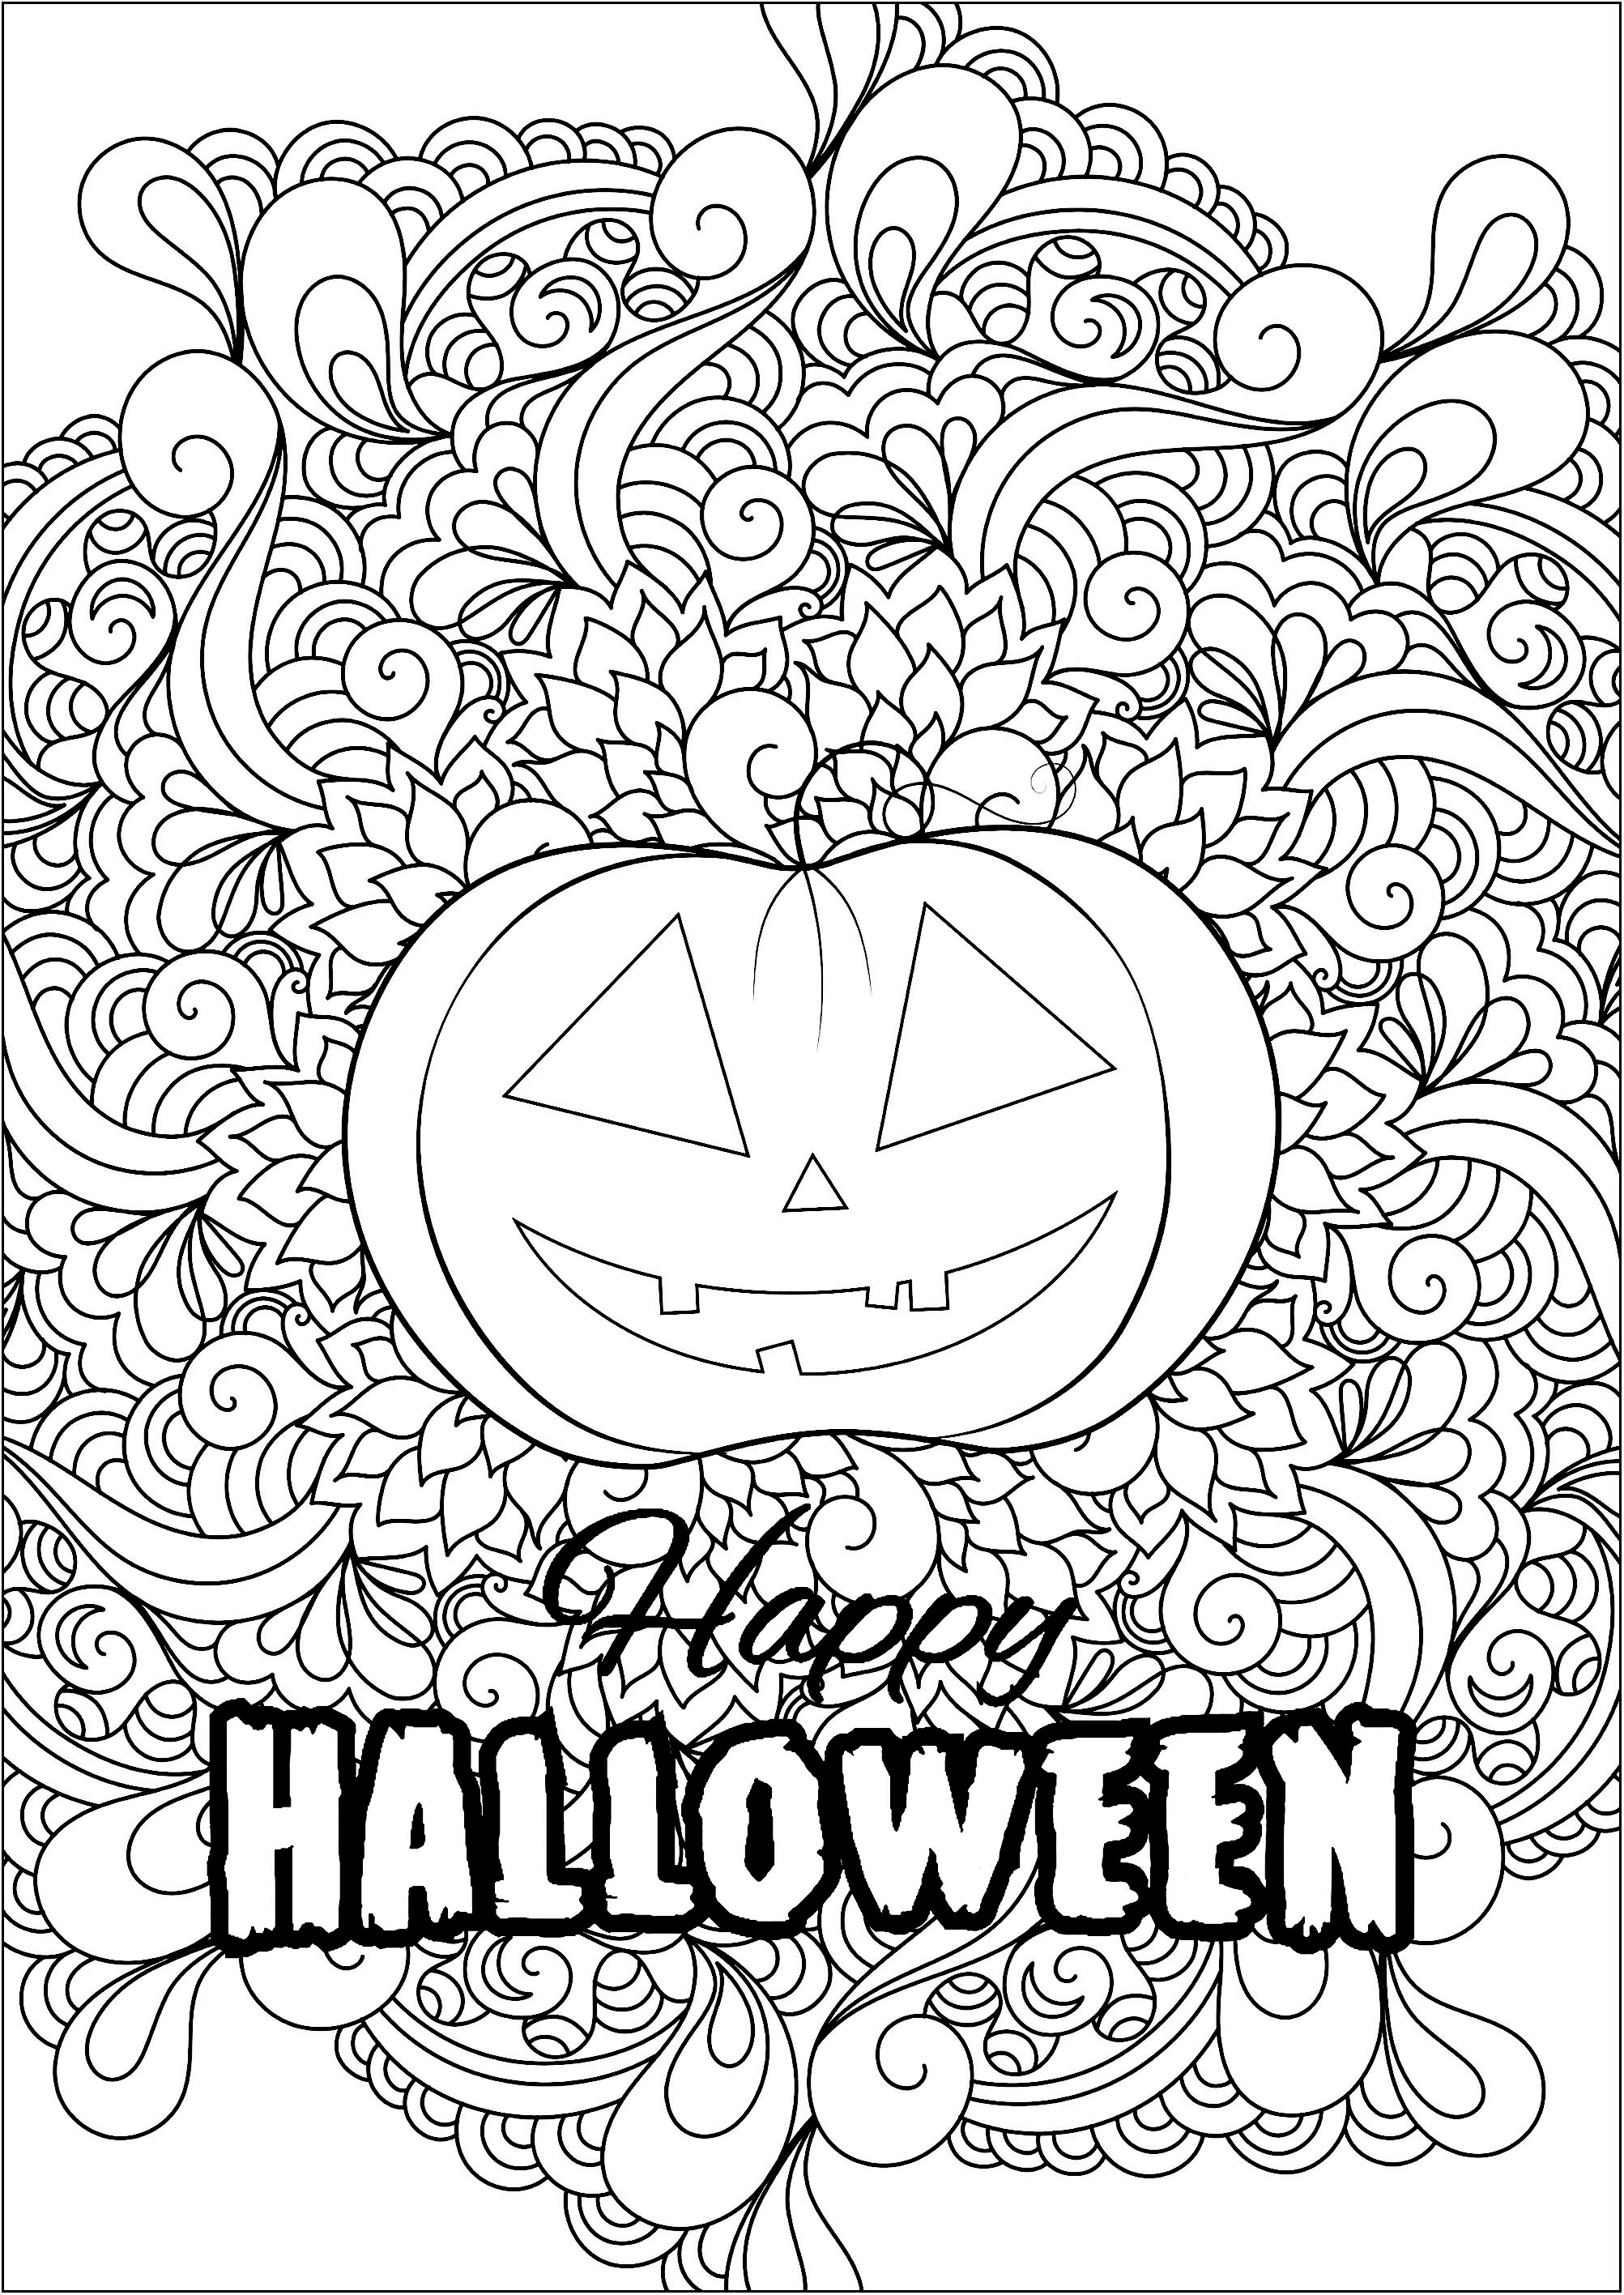 Graziosa zucca di Halloween con motivi e testi. Colorate questa graziosa zucca di Halloween con sfondo a fantasia e testo 'Happy Halloween', Fonte : 123rf   Artista : Veronikaby